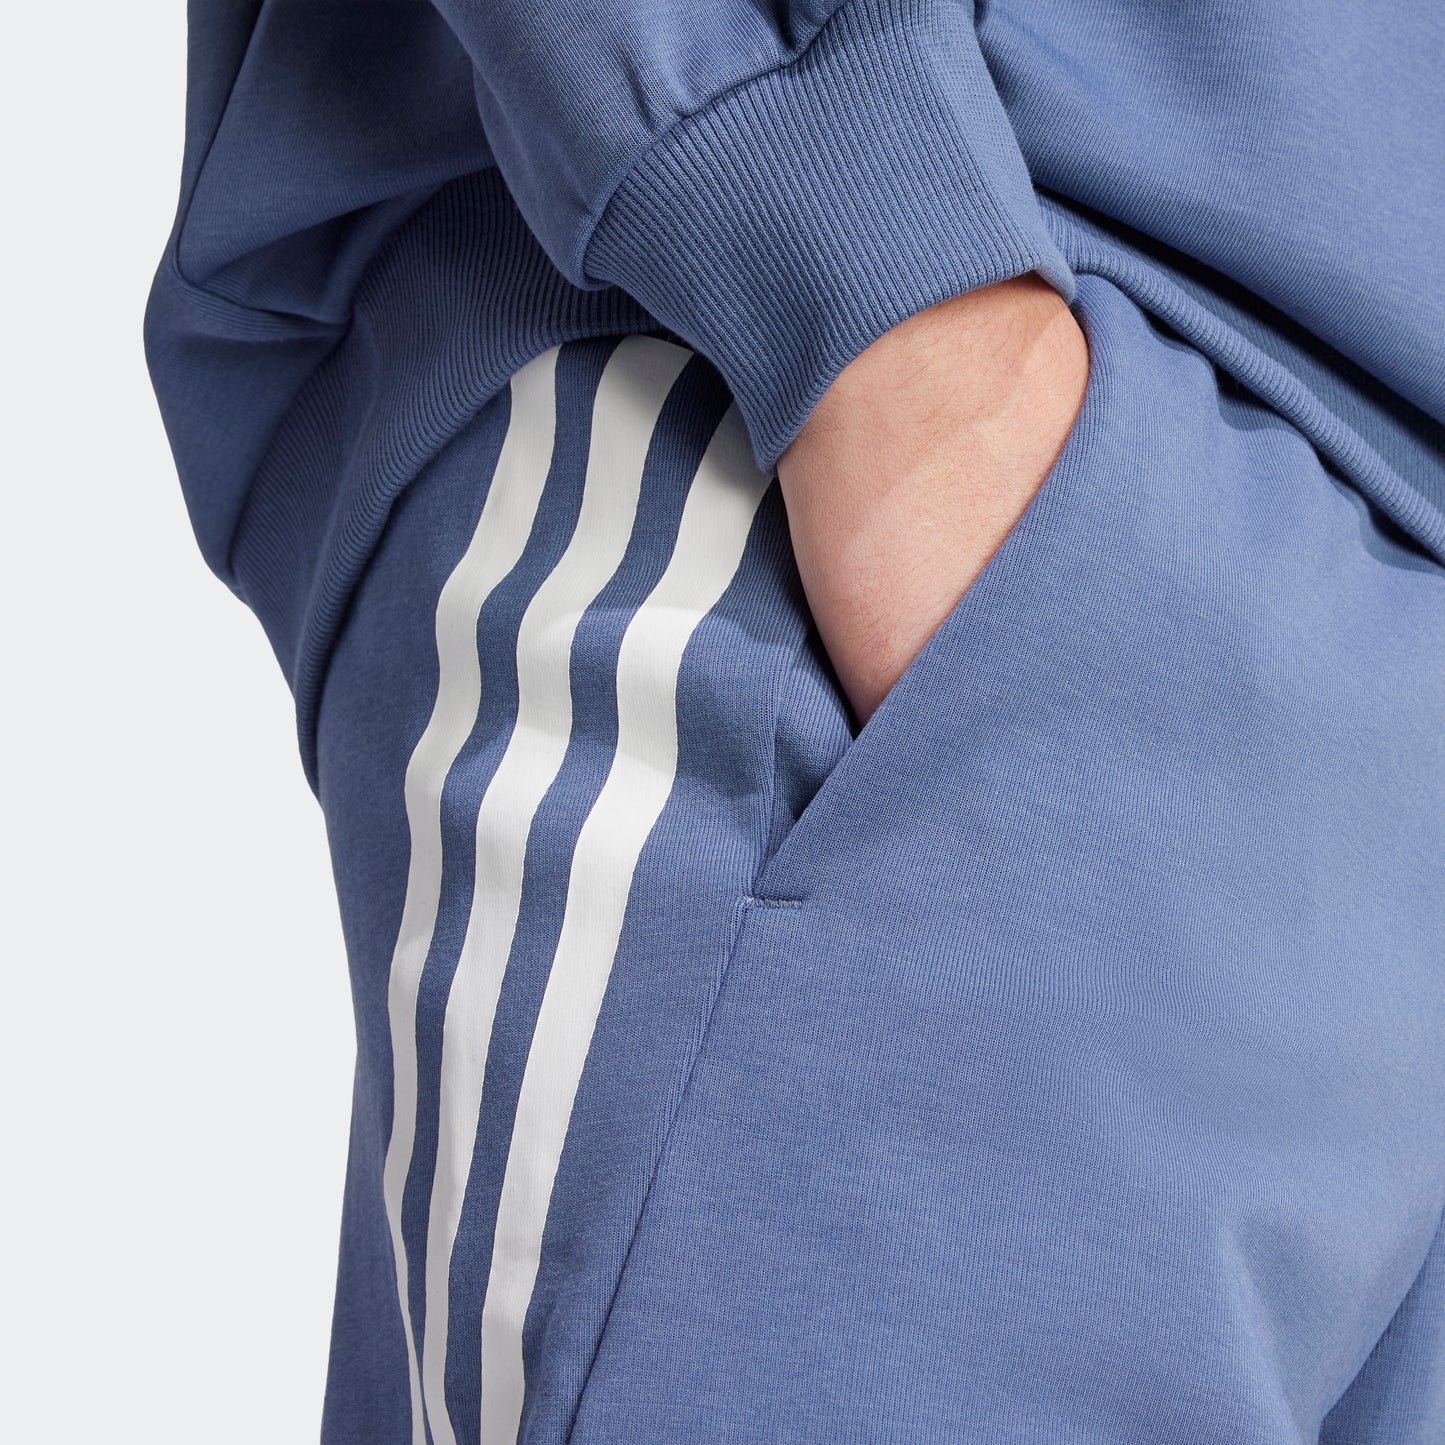 מכנסיים קצרים לגברים FUTURE ICONS 3-STRIPES בצבע כחול ולבן